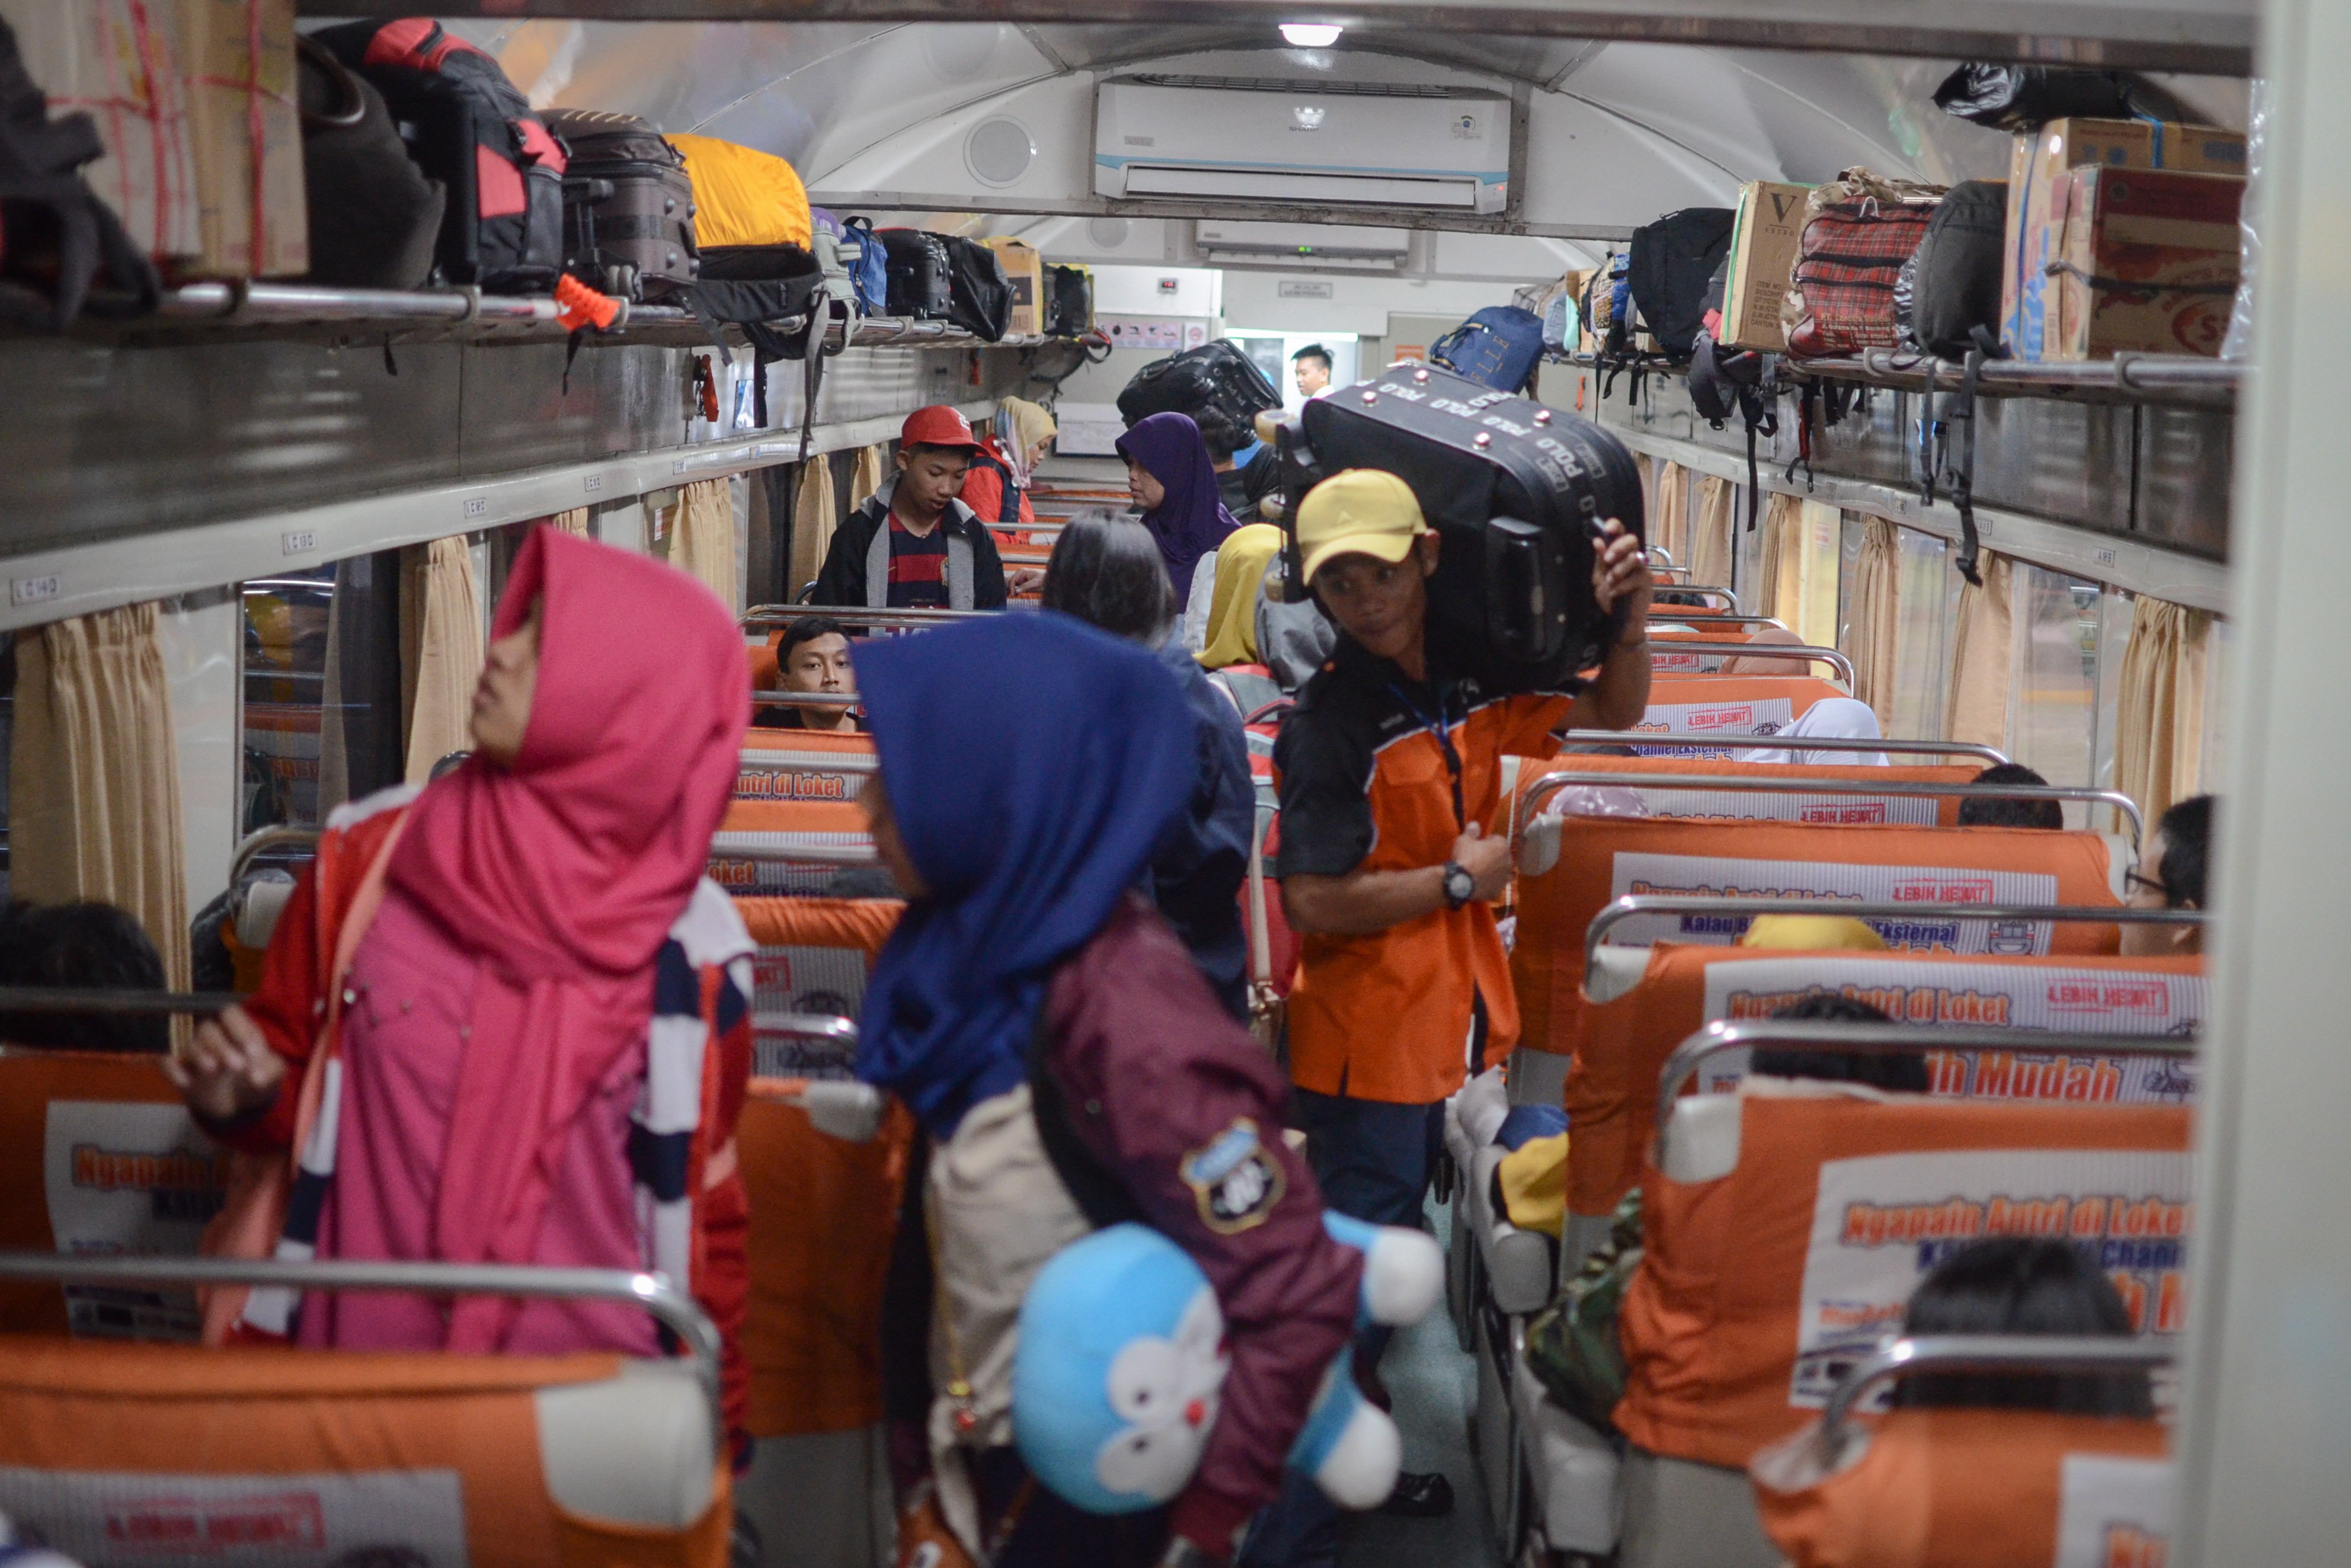 Ratusan pemudik menaiki kereta api Mutiara Selatan tujuan akhir Surabaya di Stasiun Kiaracondong, Bandung, Jawa Barat, Senin (11/6). PT Kereta Api Indonesia Daop 2 Bandung memprediksi lonjakan penumpang arus mudik di Jawa Barat 20,7 persen dari tahun lalu yang mencapai 11.531 kursi.